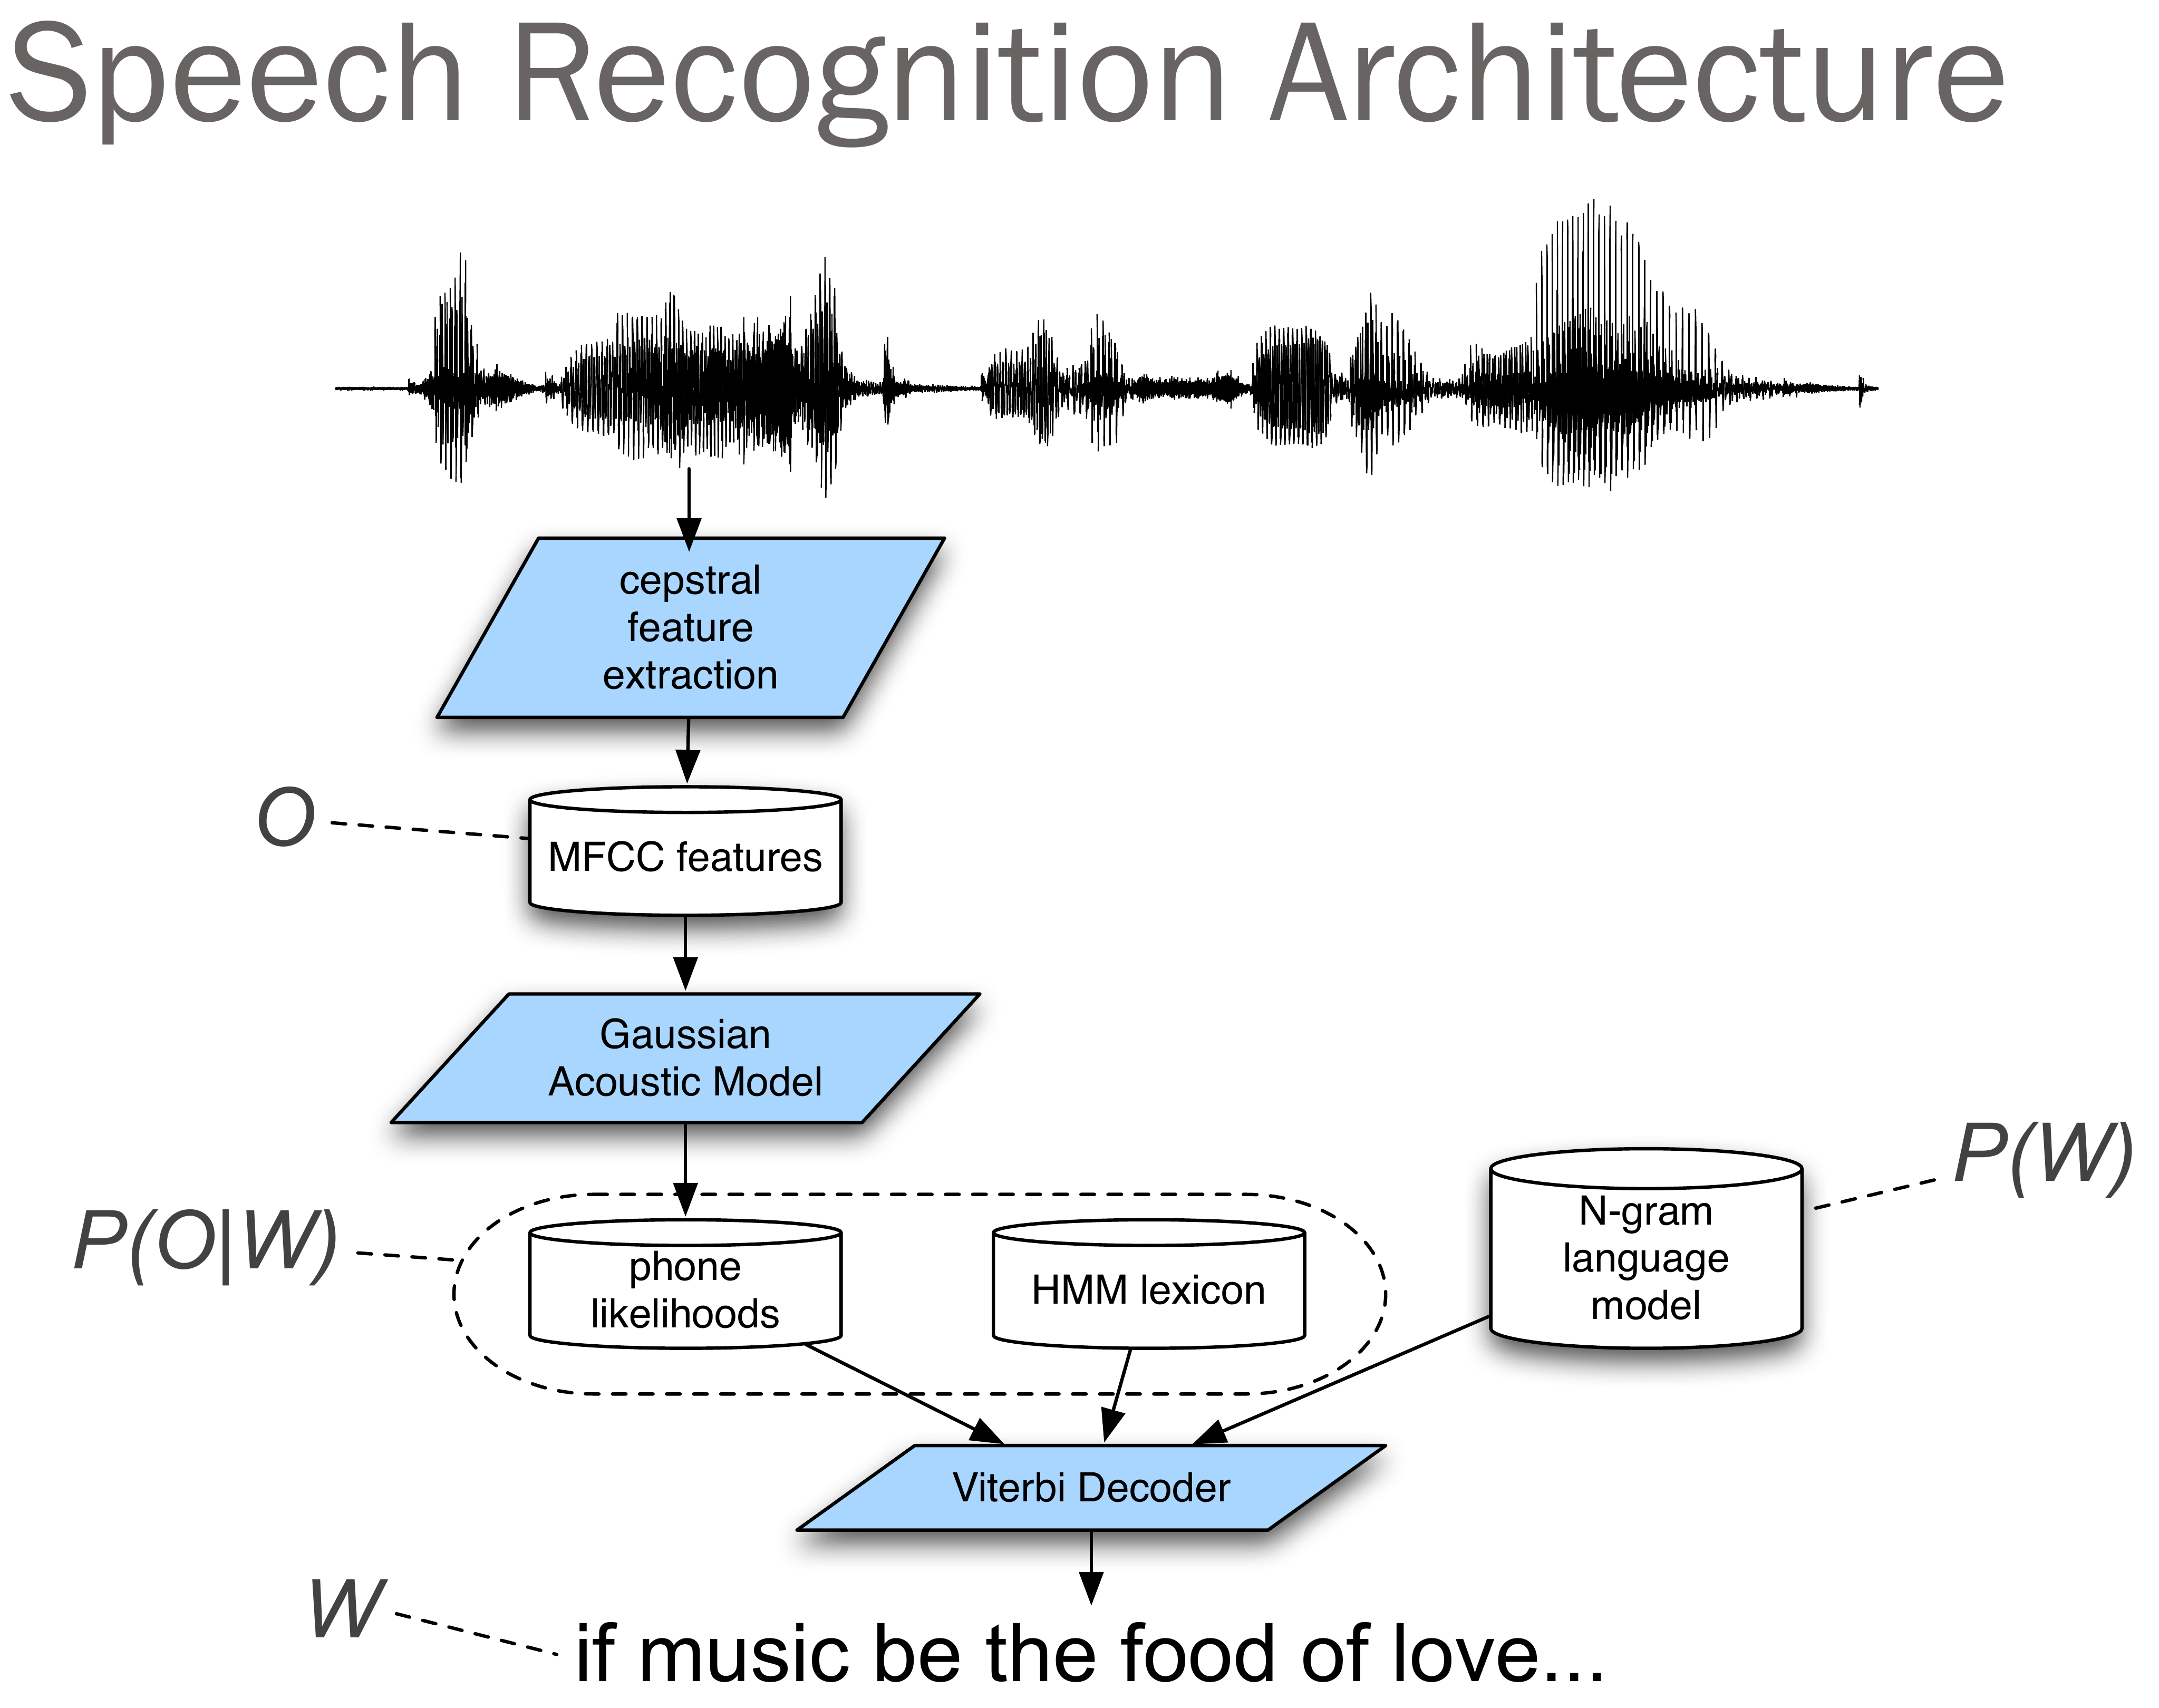 End speech. Speech архитектура. Распознавание речи архитектура. Архитектура системы распознавания речи. Спич рекогнишен.